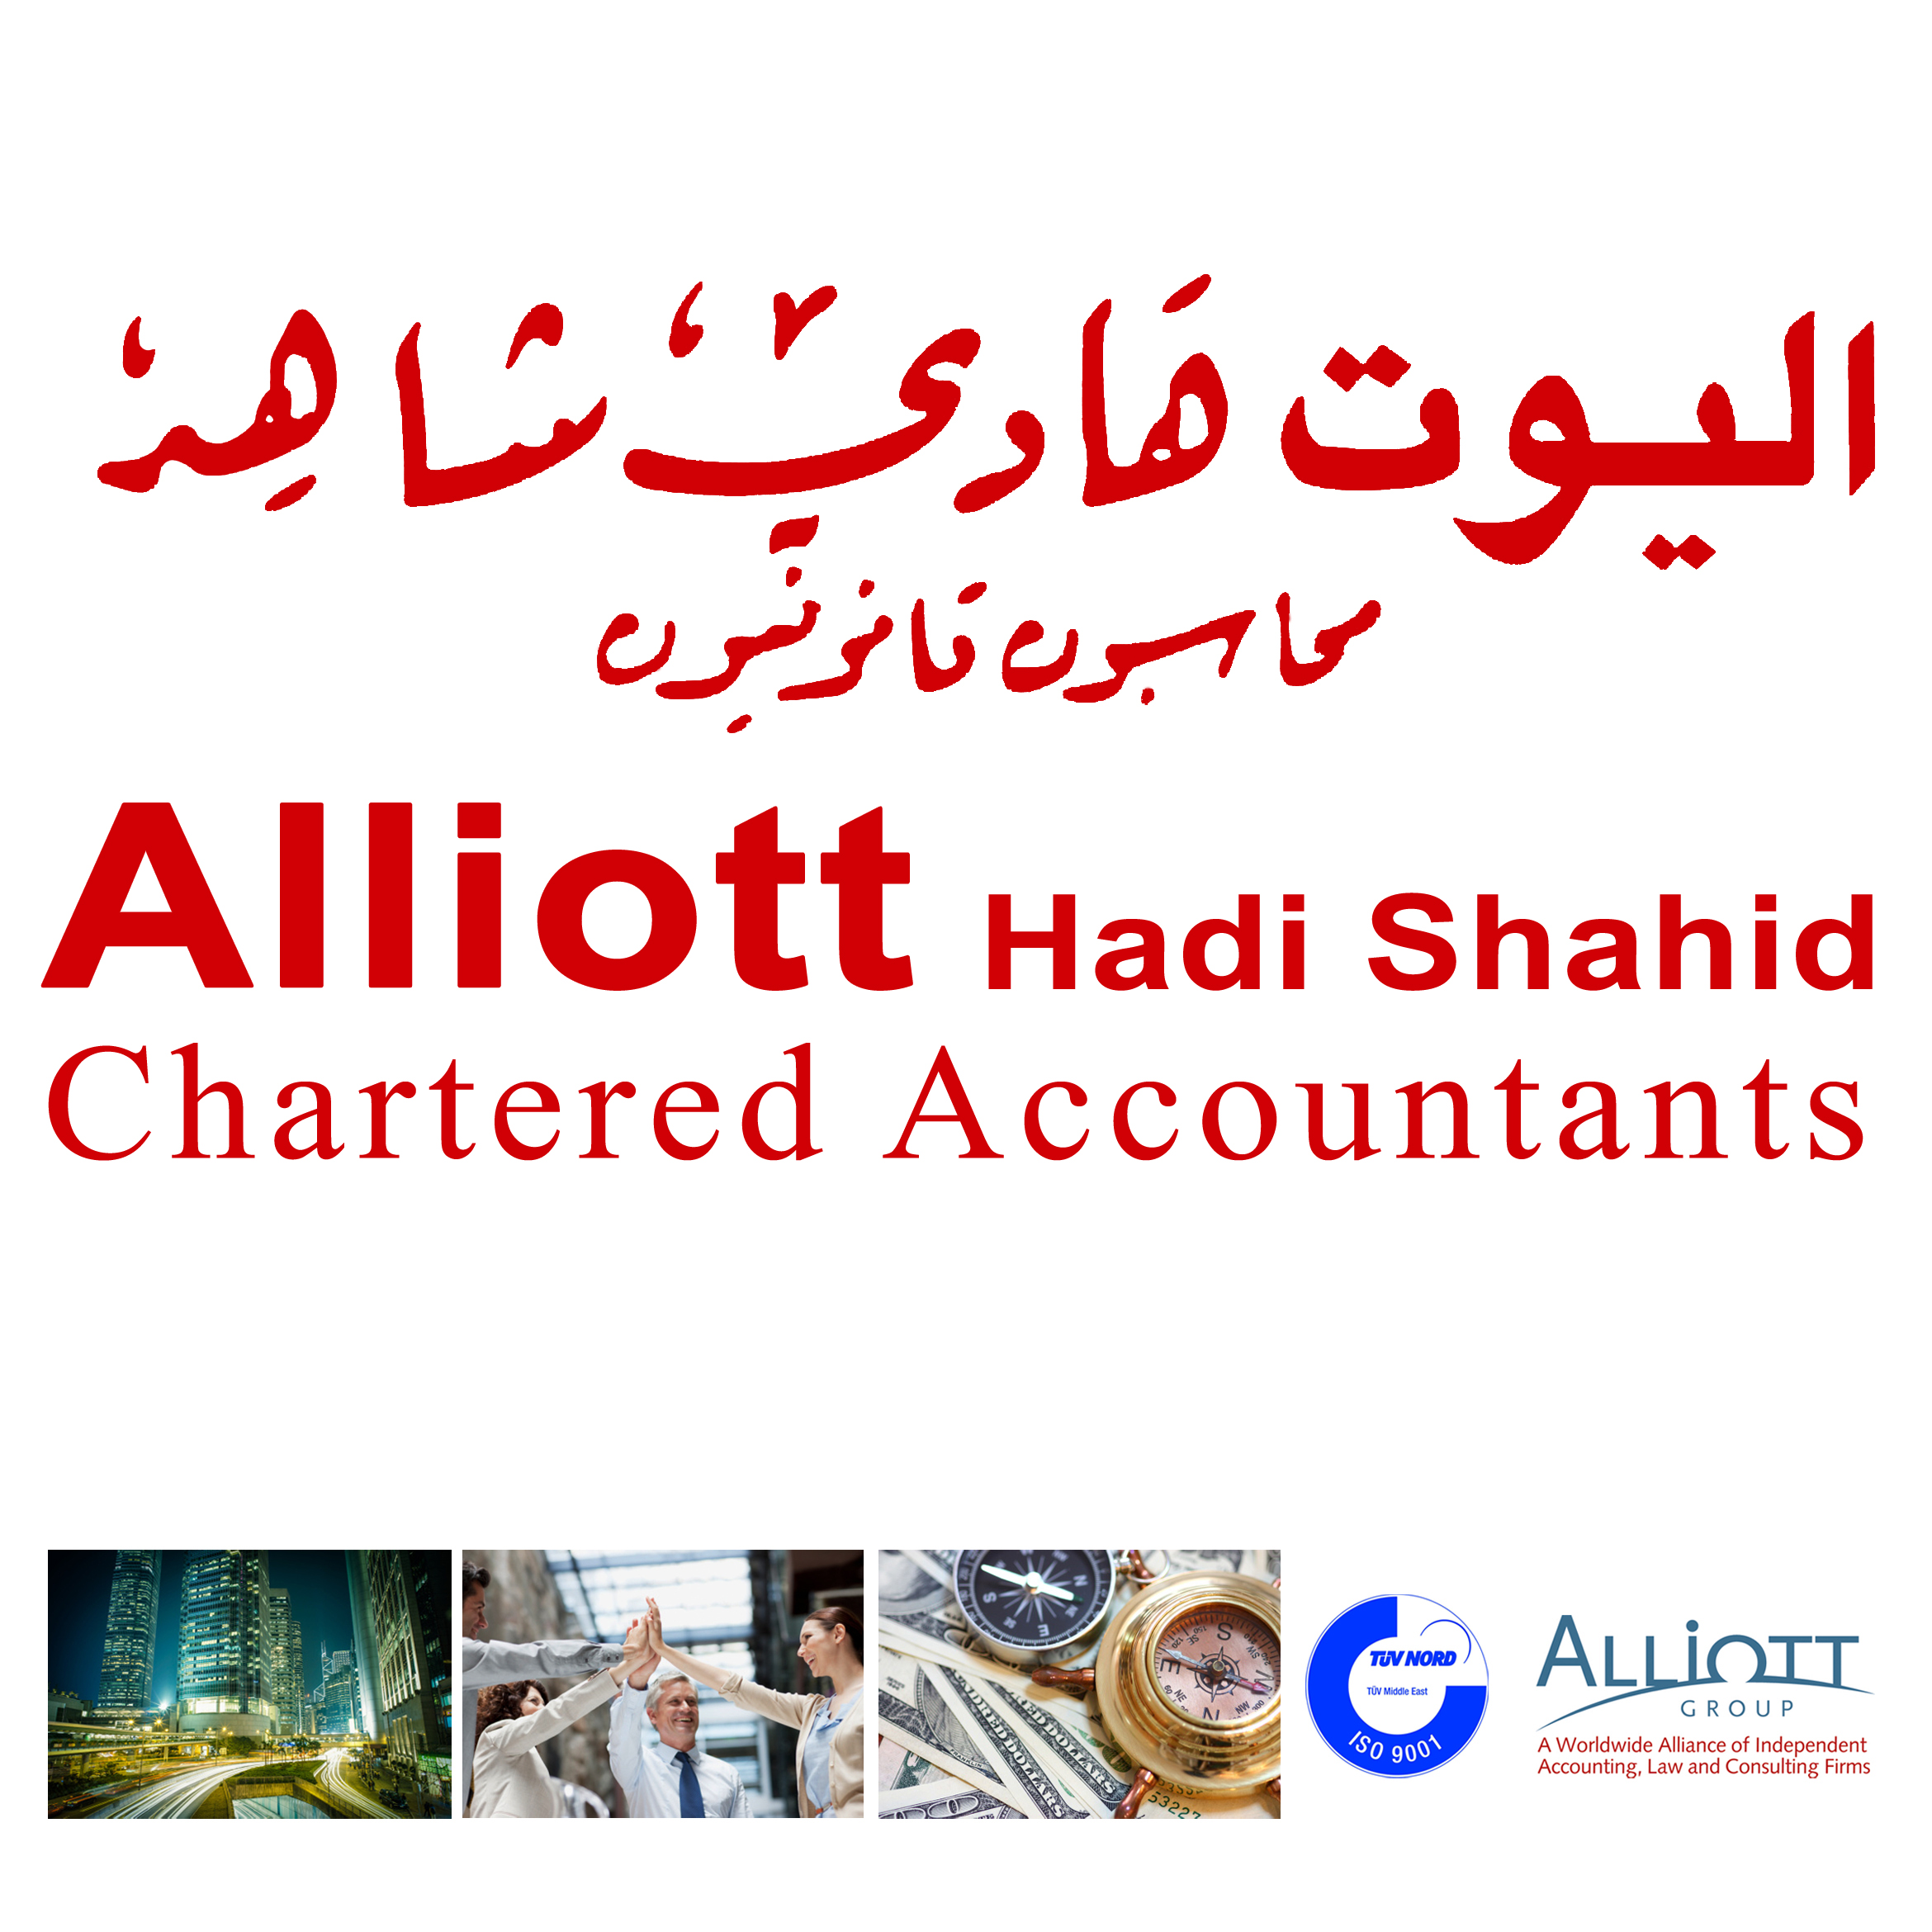 Alliott Hadi Shahid Chartered Accountants Logo